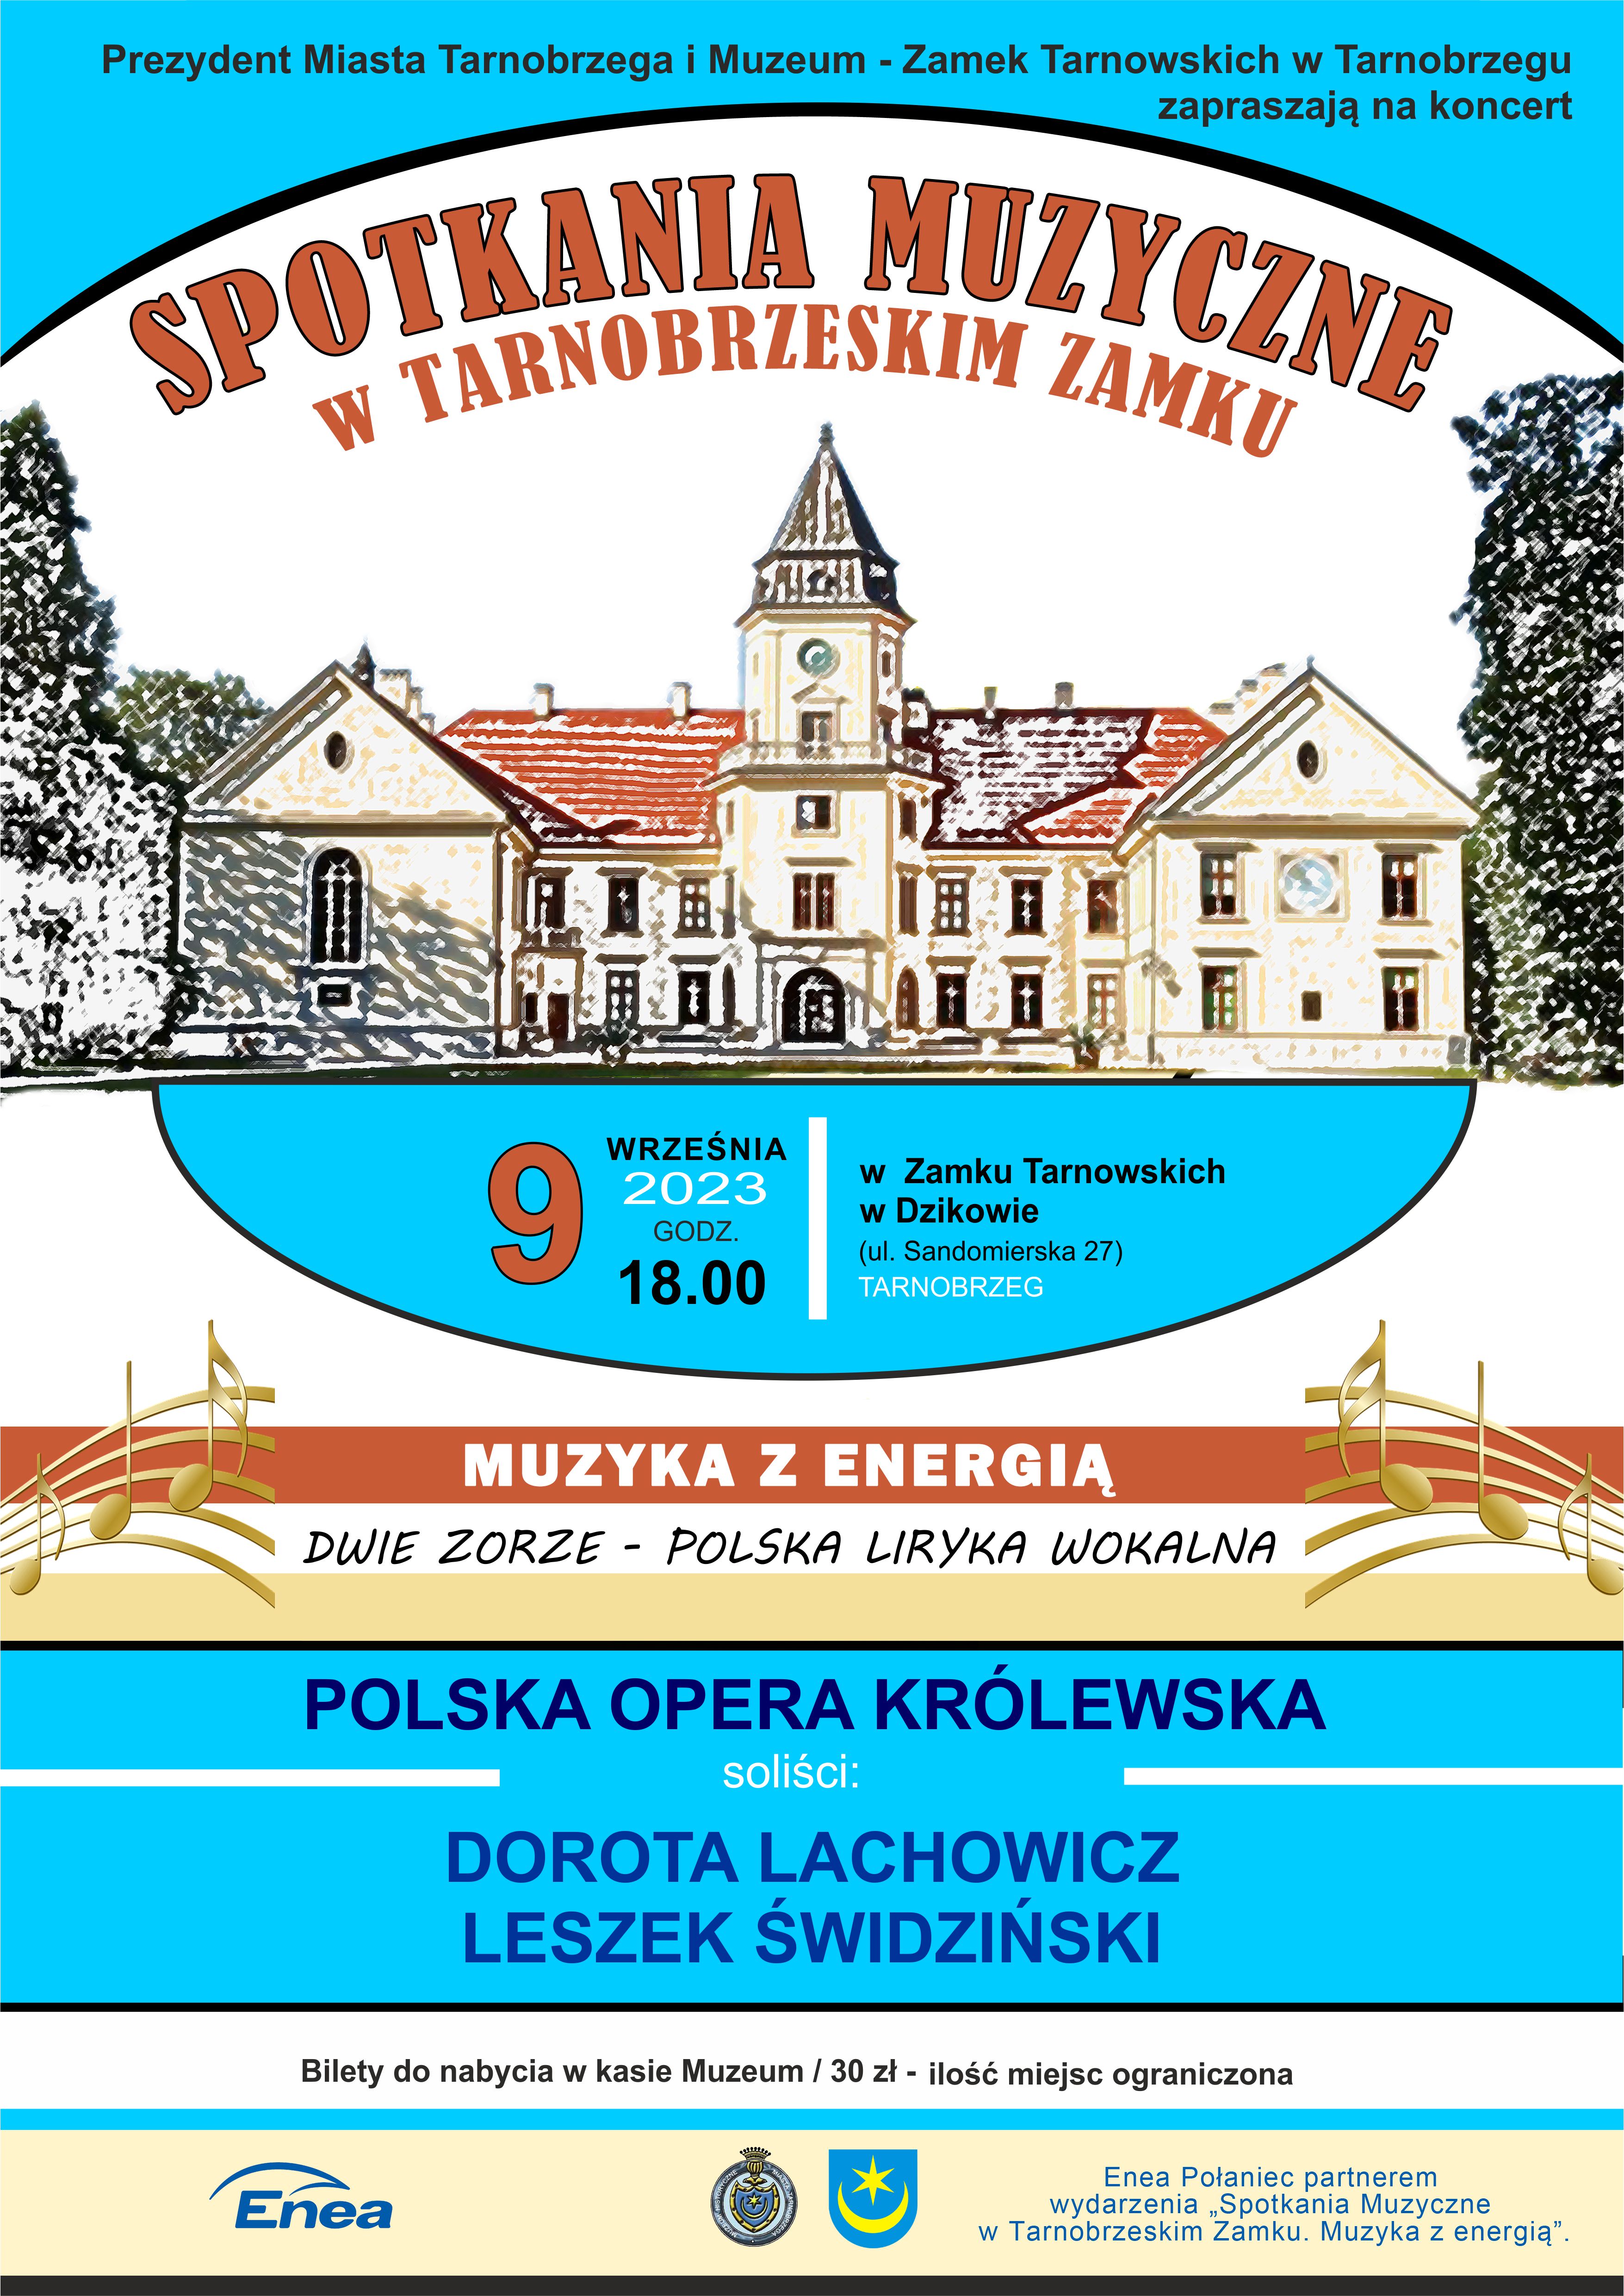 Dwie zorze - polska liryka wokalna w Tarnobrzegu